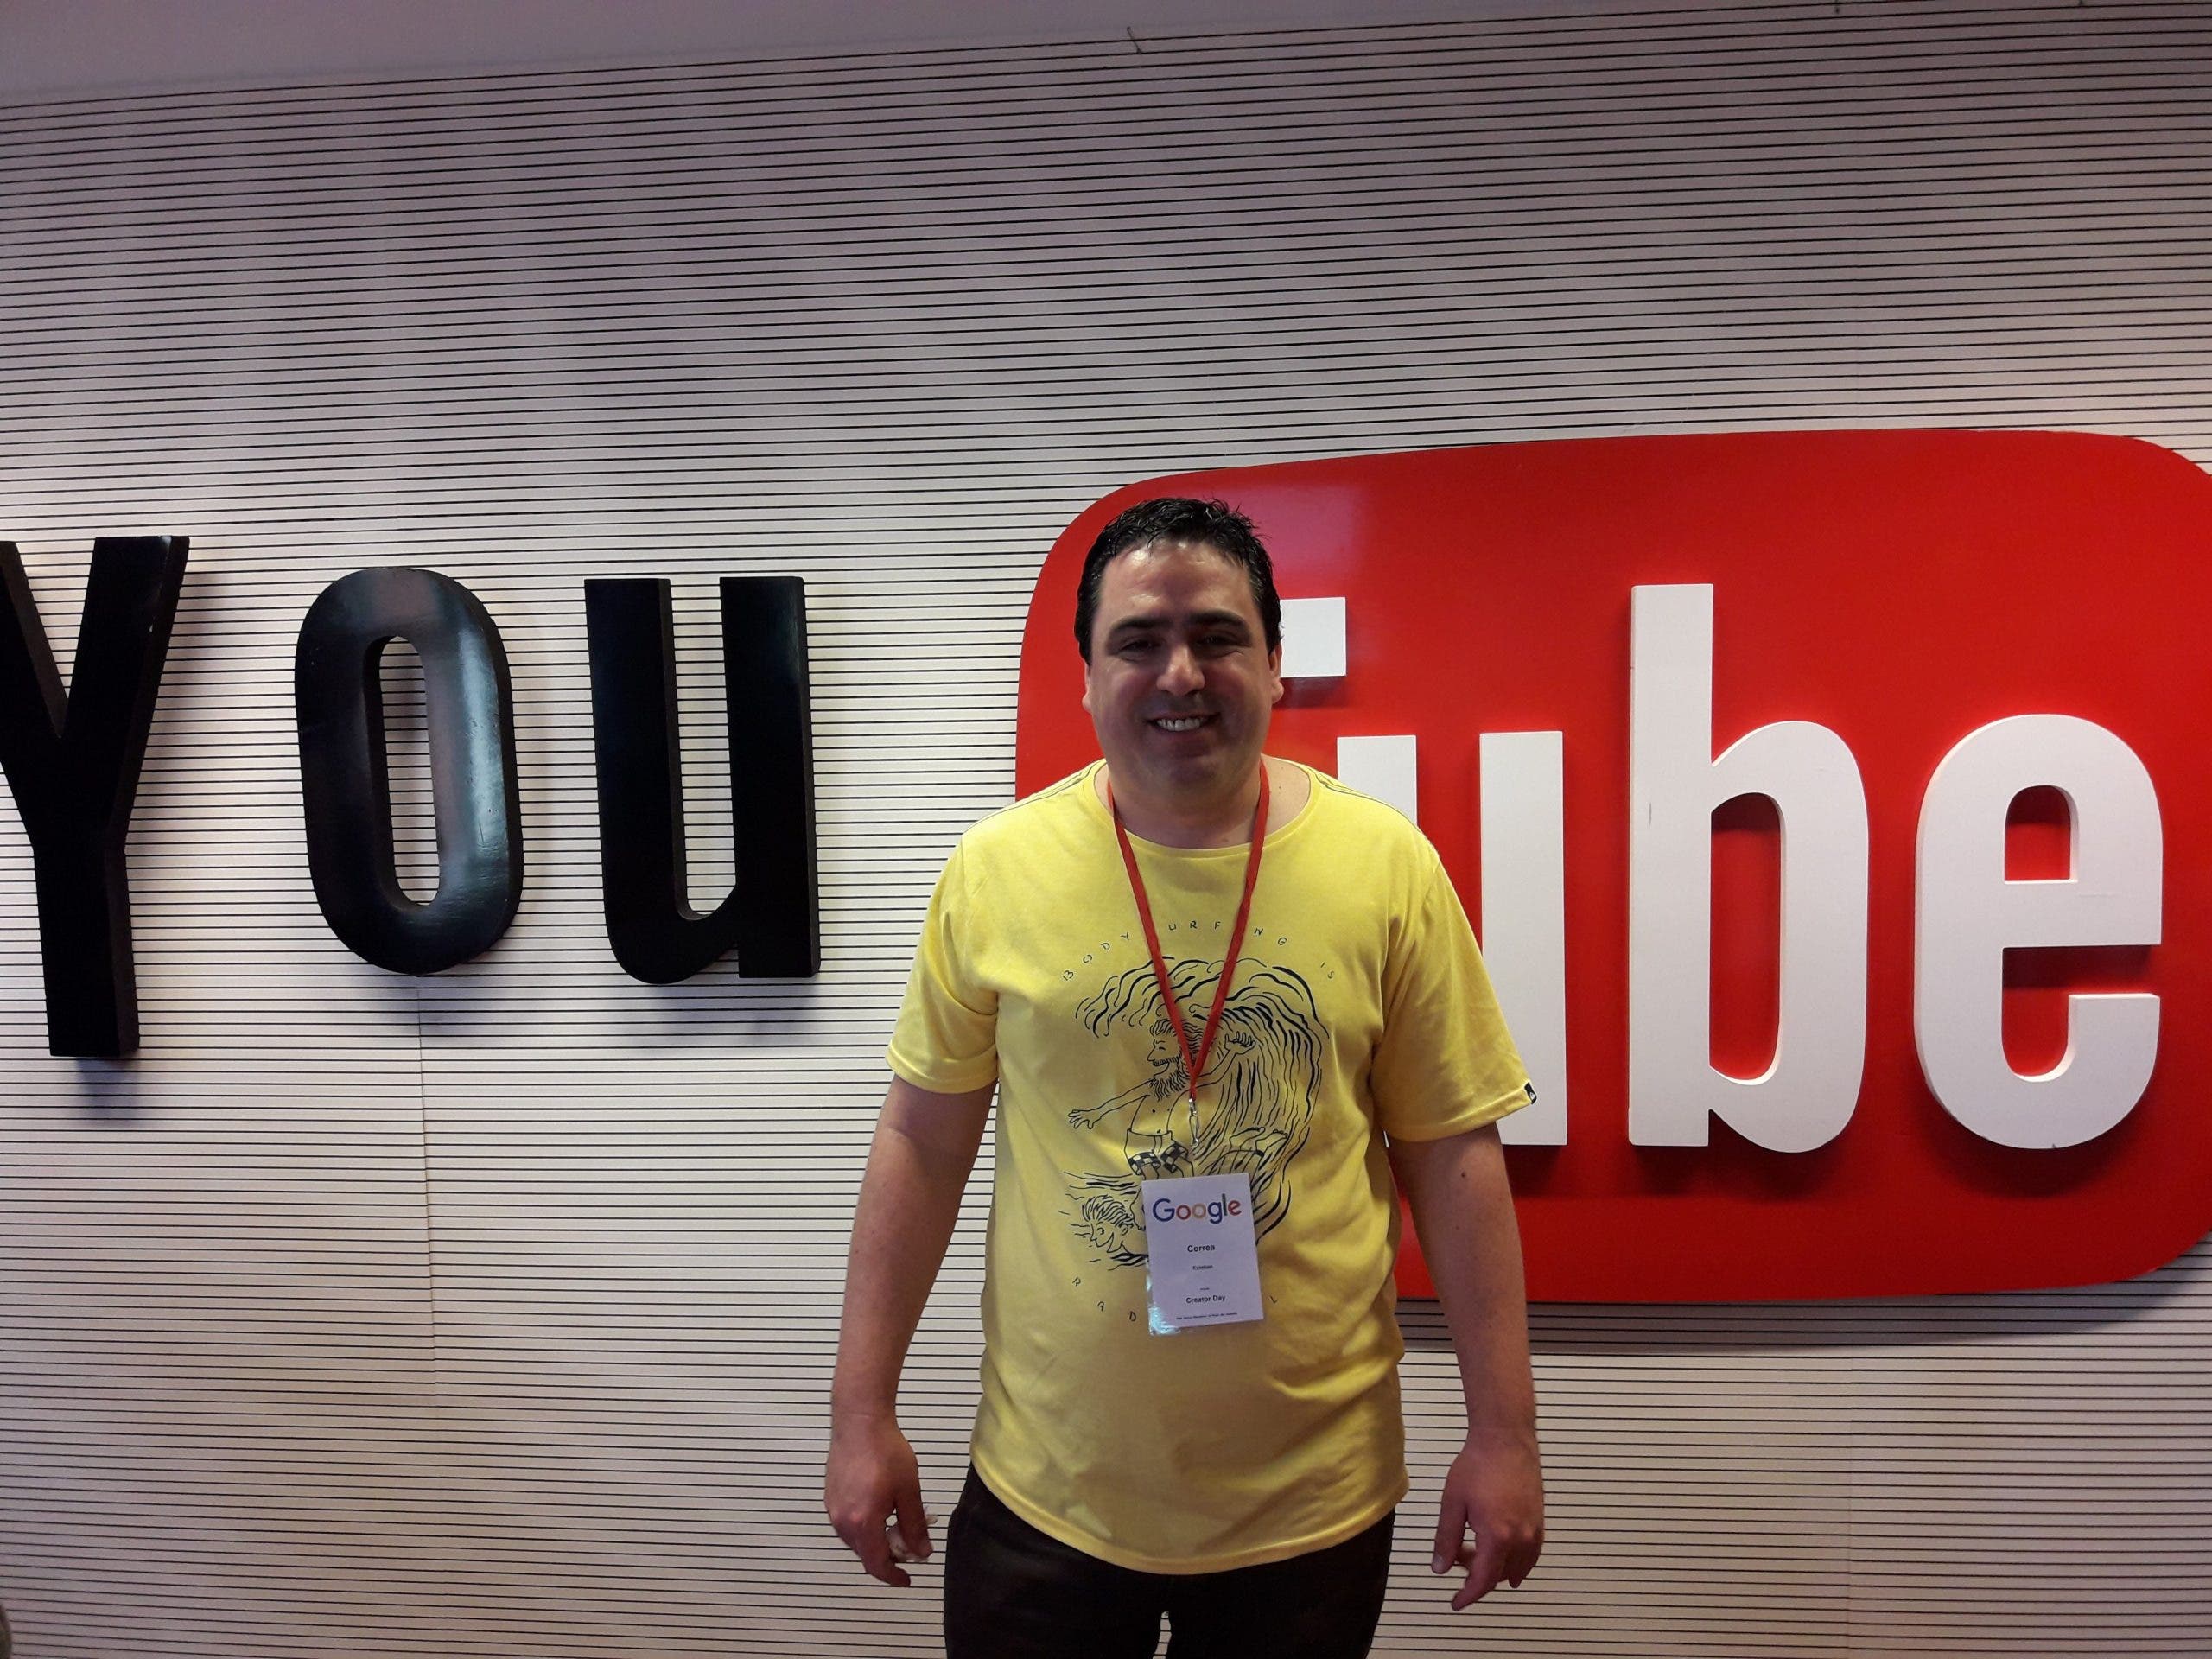 Productor Esteban Correa y sus consejos para crecer en YouTube